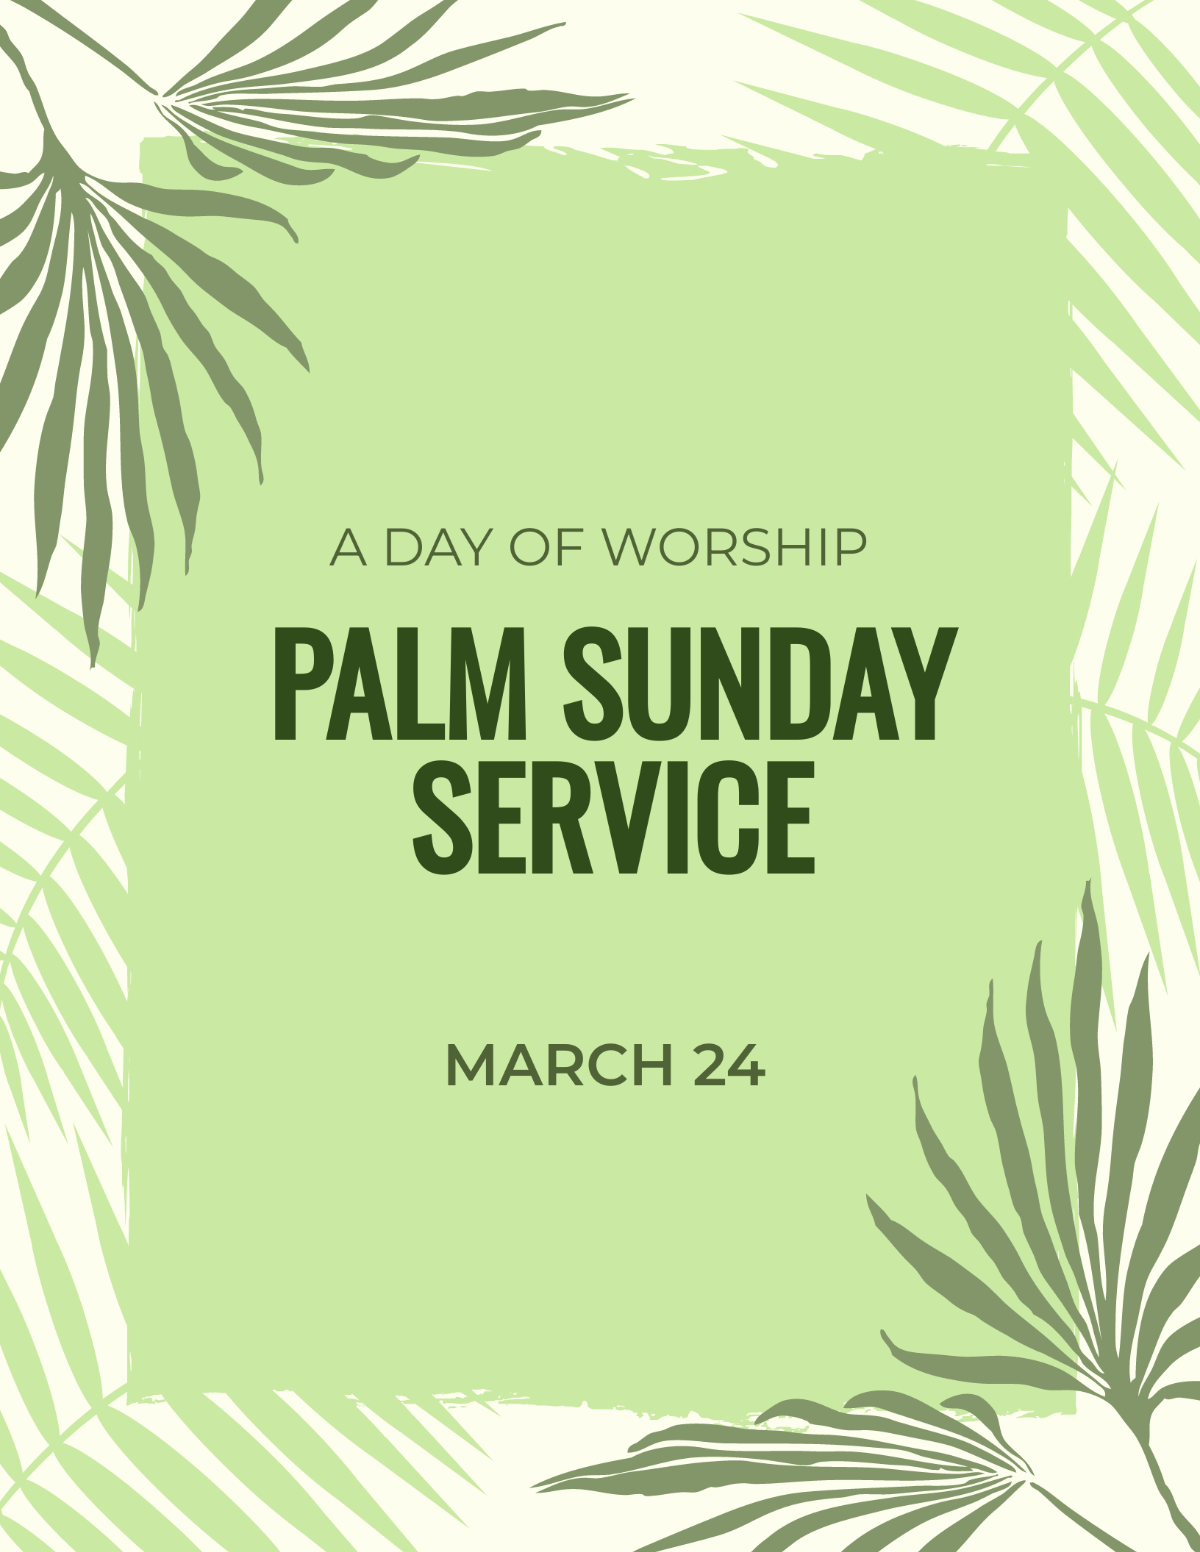 Palm Sunday Service Flyer Template